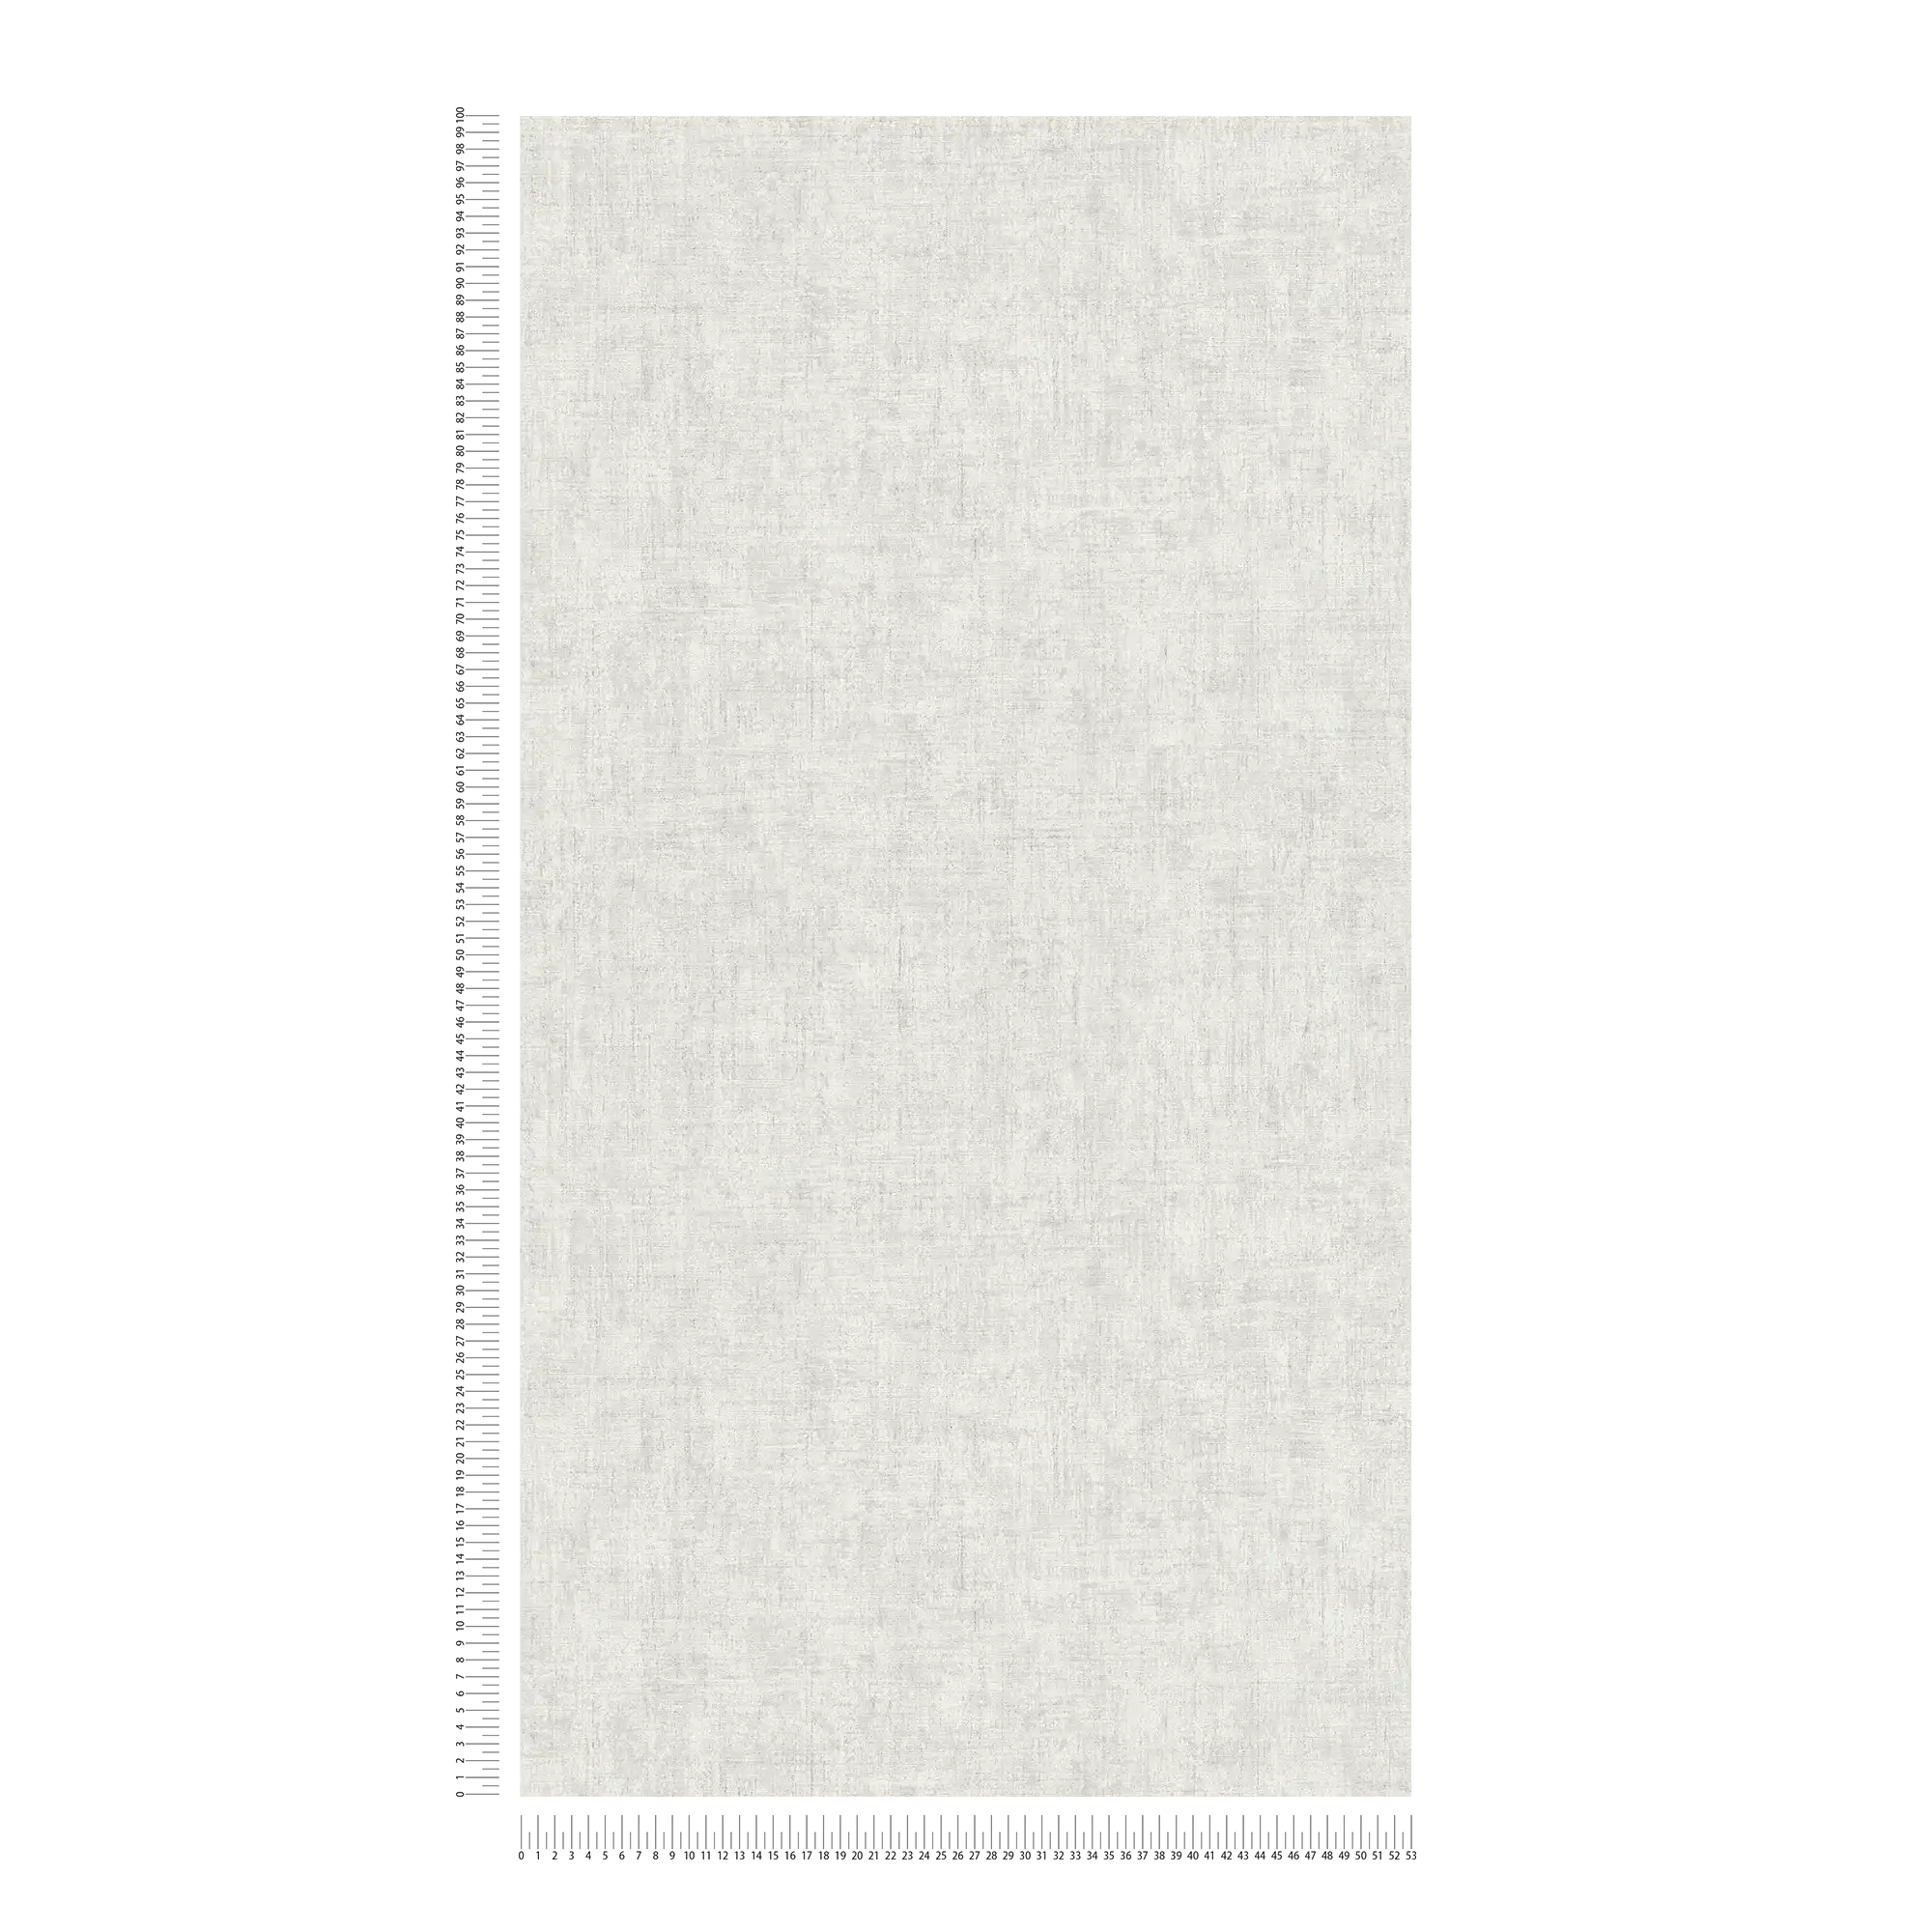             Carta da parati unitaria grigio chiaro con effetto intonaco rustico dal design vintage
        